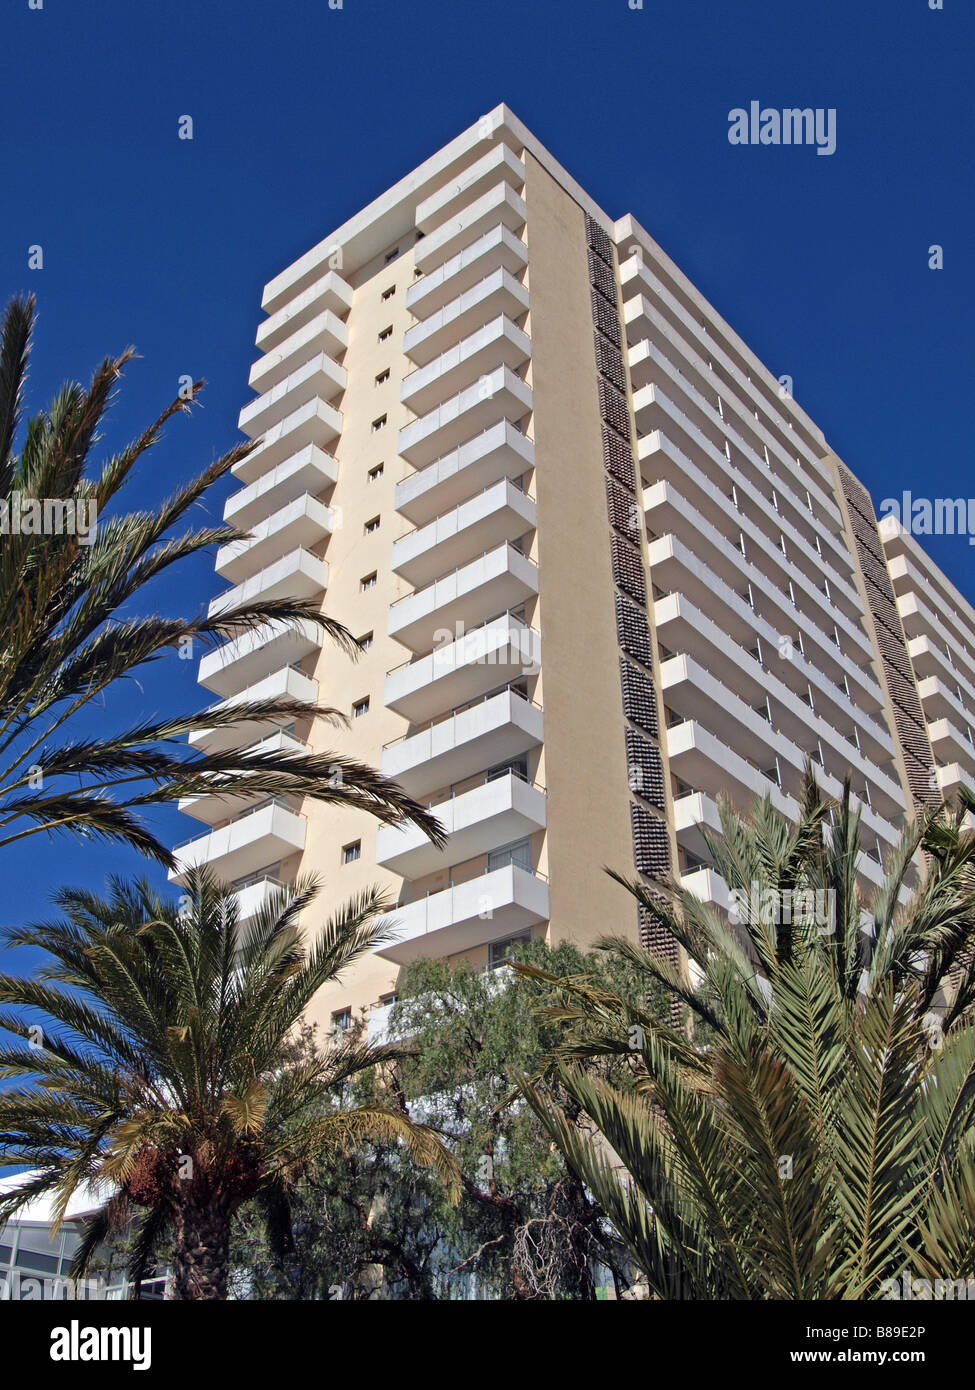 Altura hotel estuvo de vacaciones en Playa Parasio, Costa Adeje, Tenerife, Islas Canarias. Foto de stock